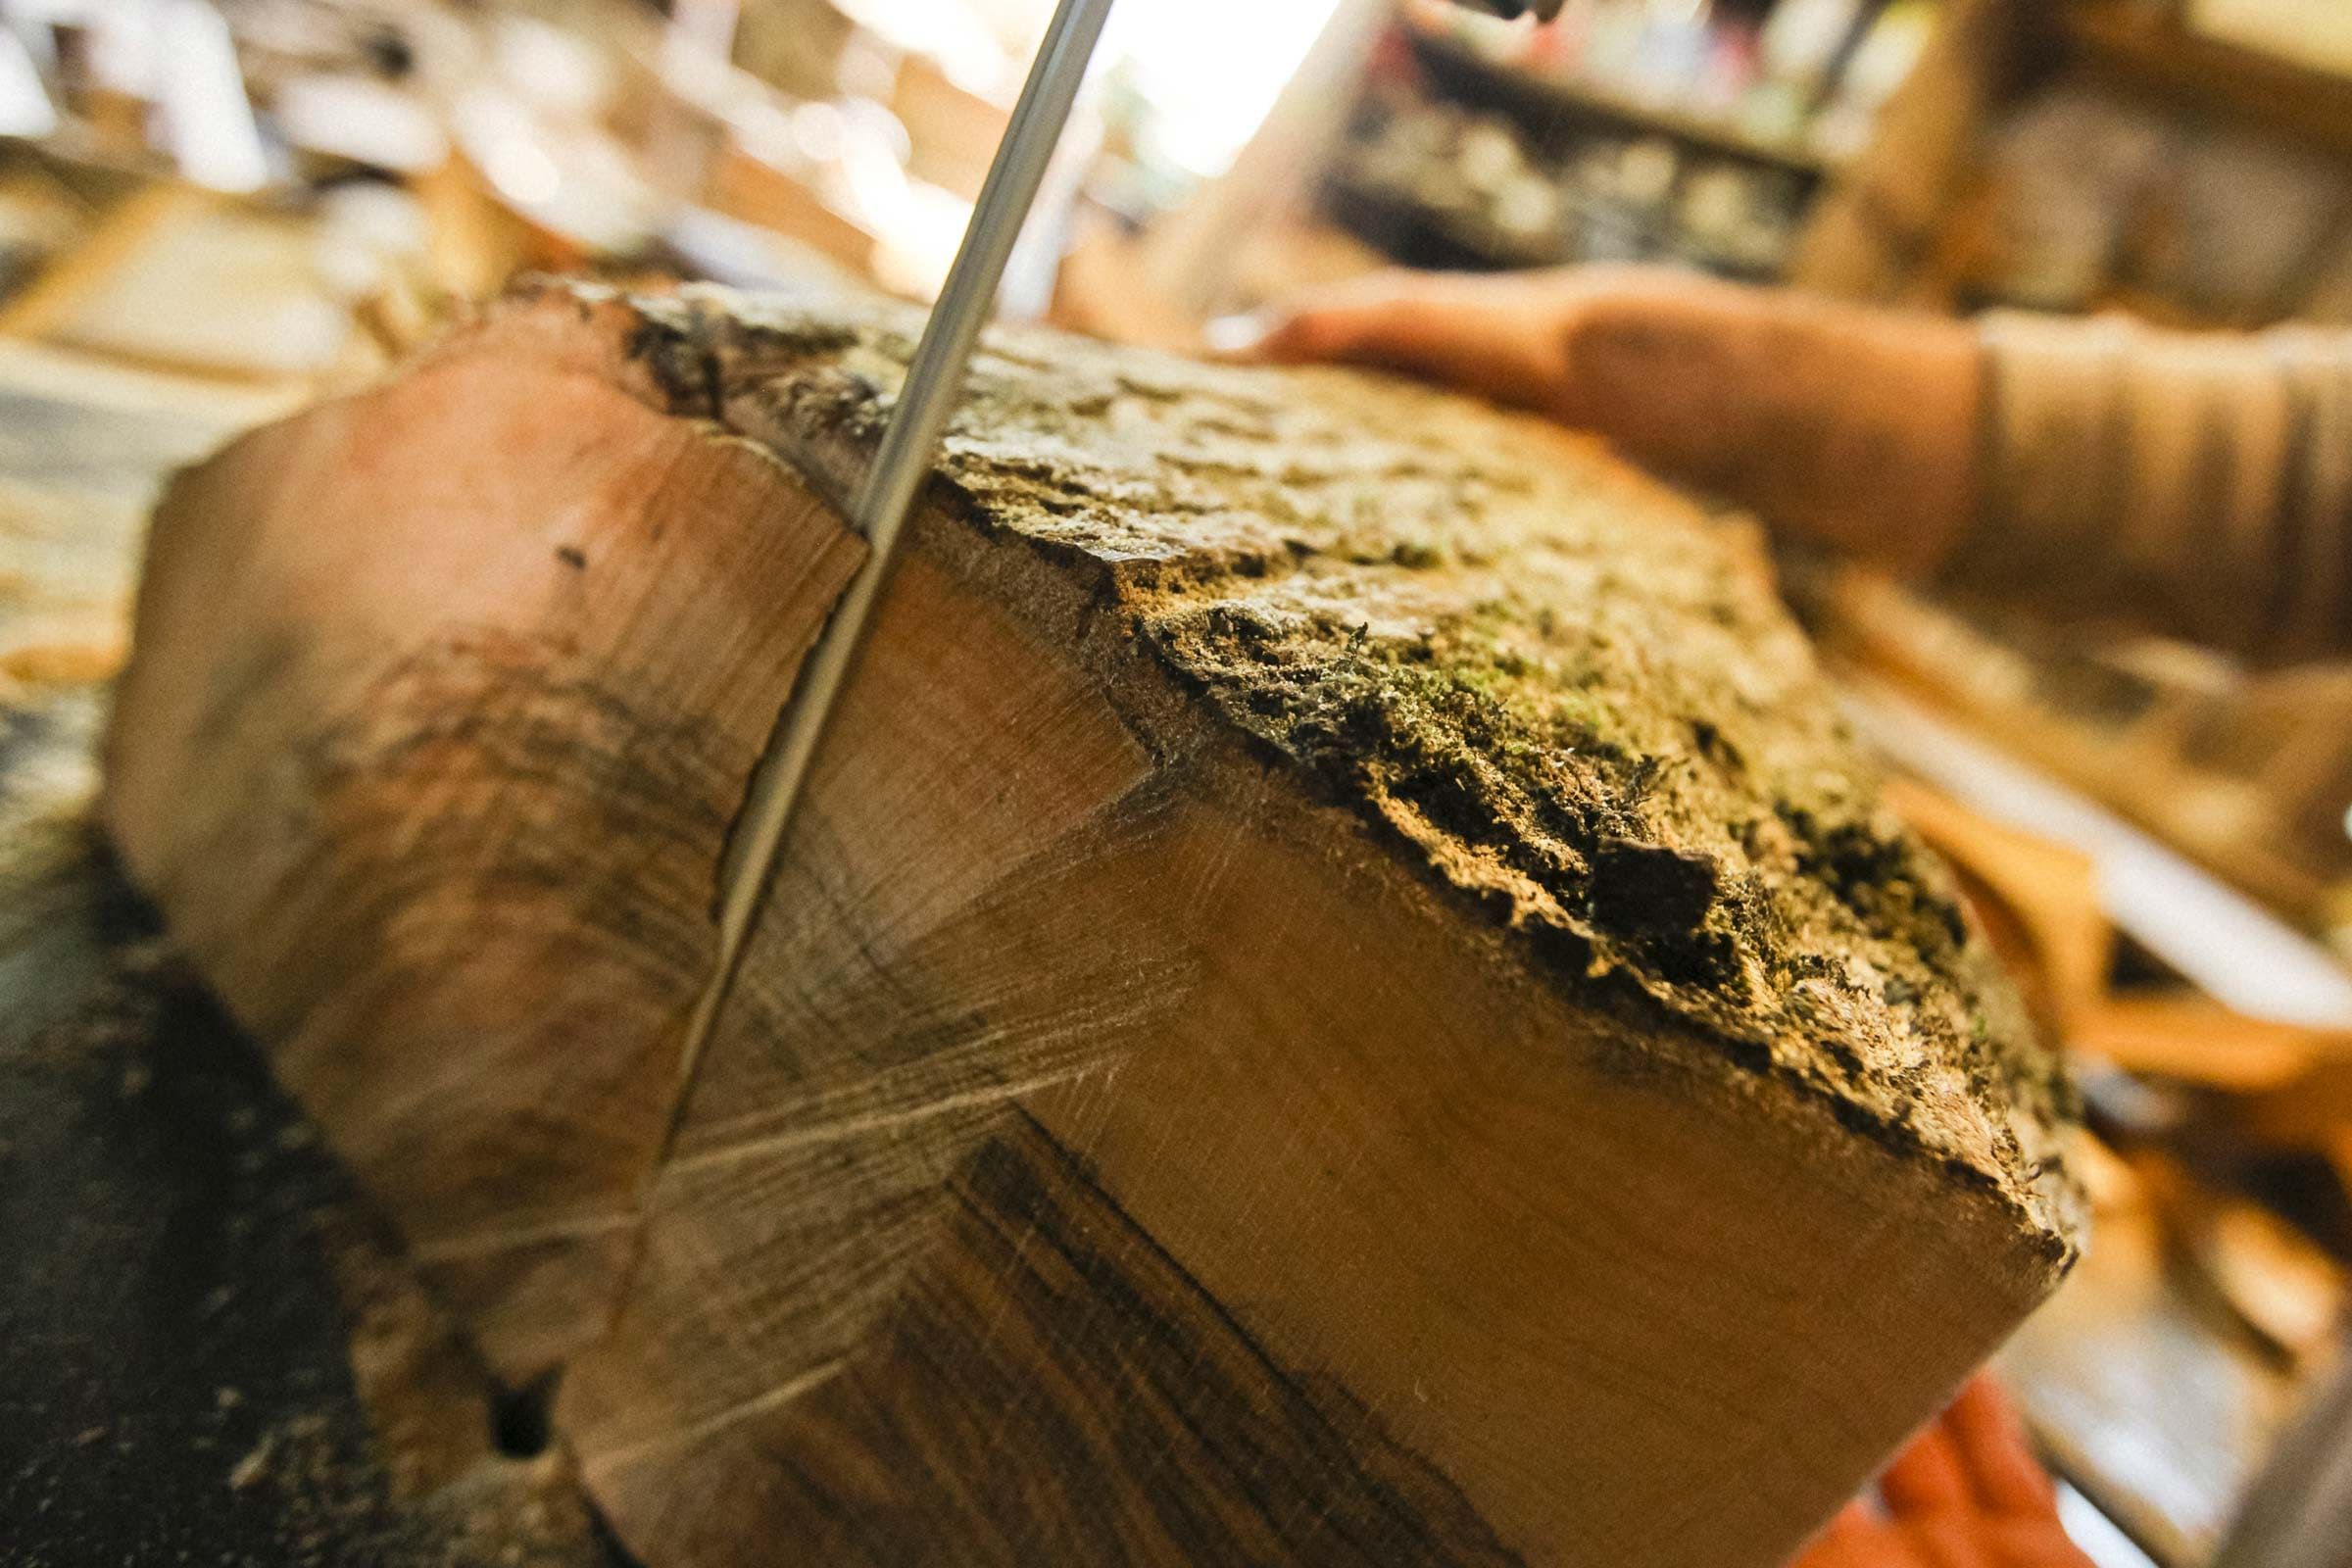 Découpedu bois d'olivier -  Le travail artisanal du Bois d'olivier